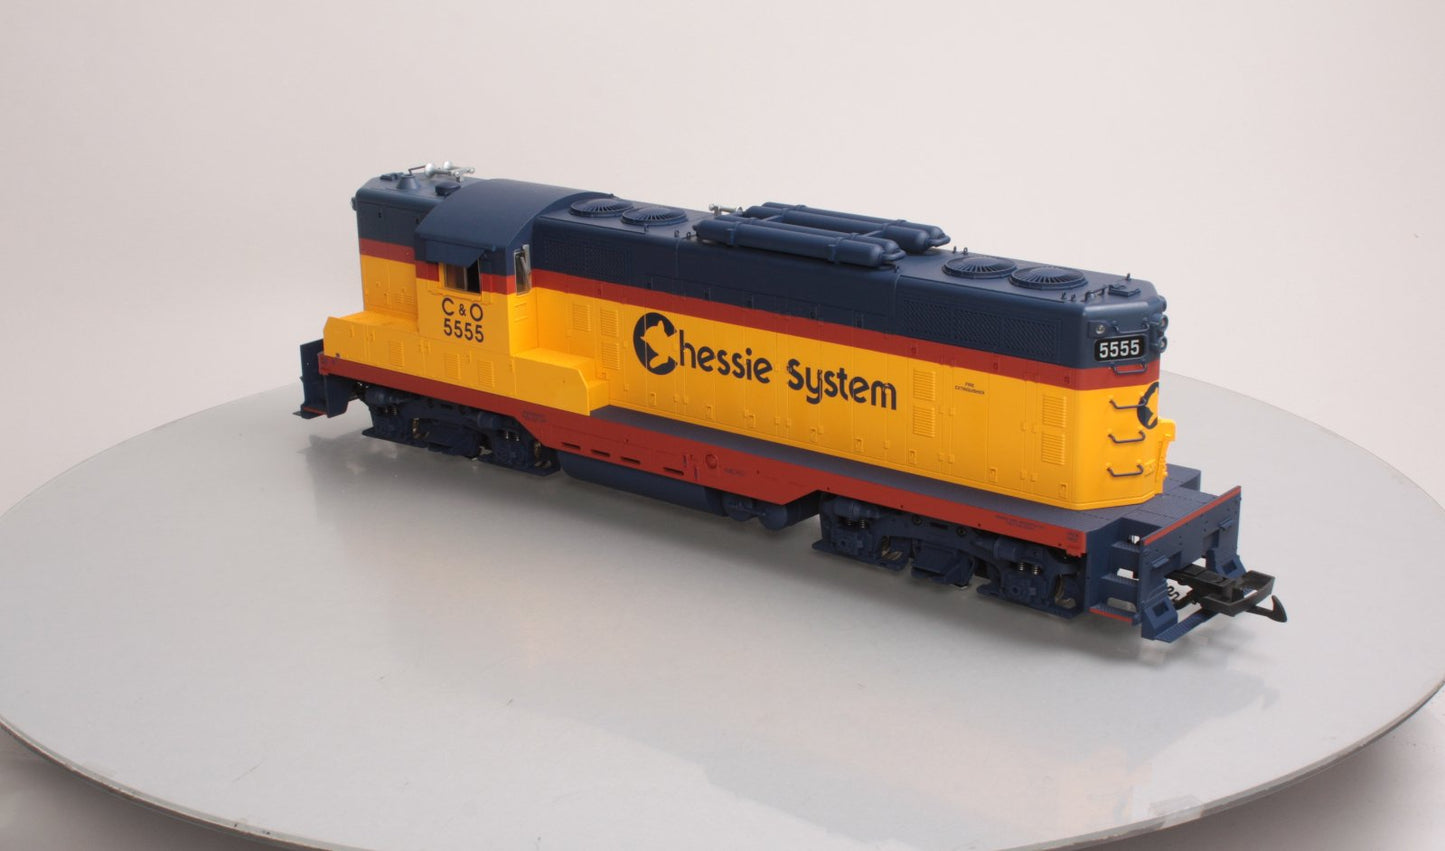 USA Trains R22105 G Chessie System EMD GP7 Diesel Locomotive